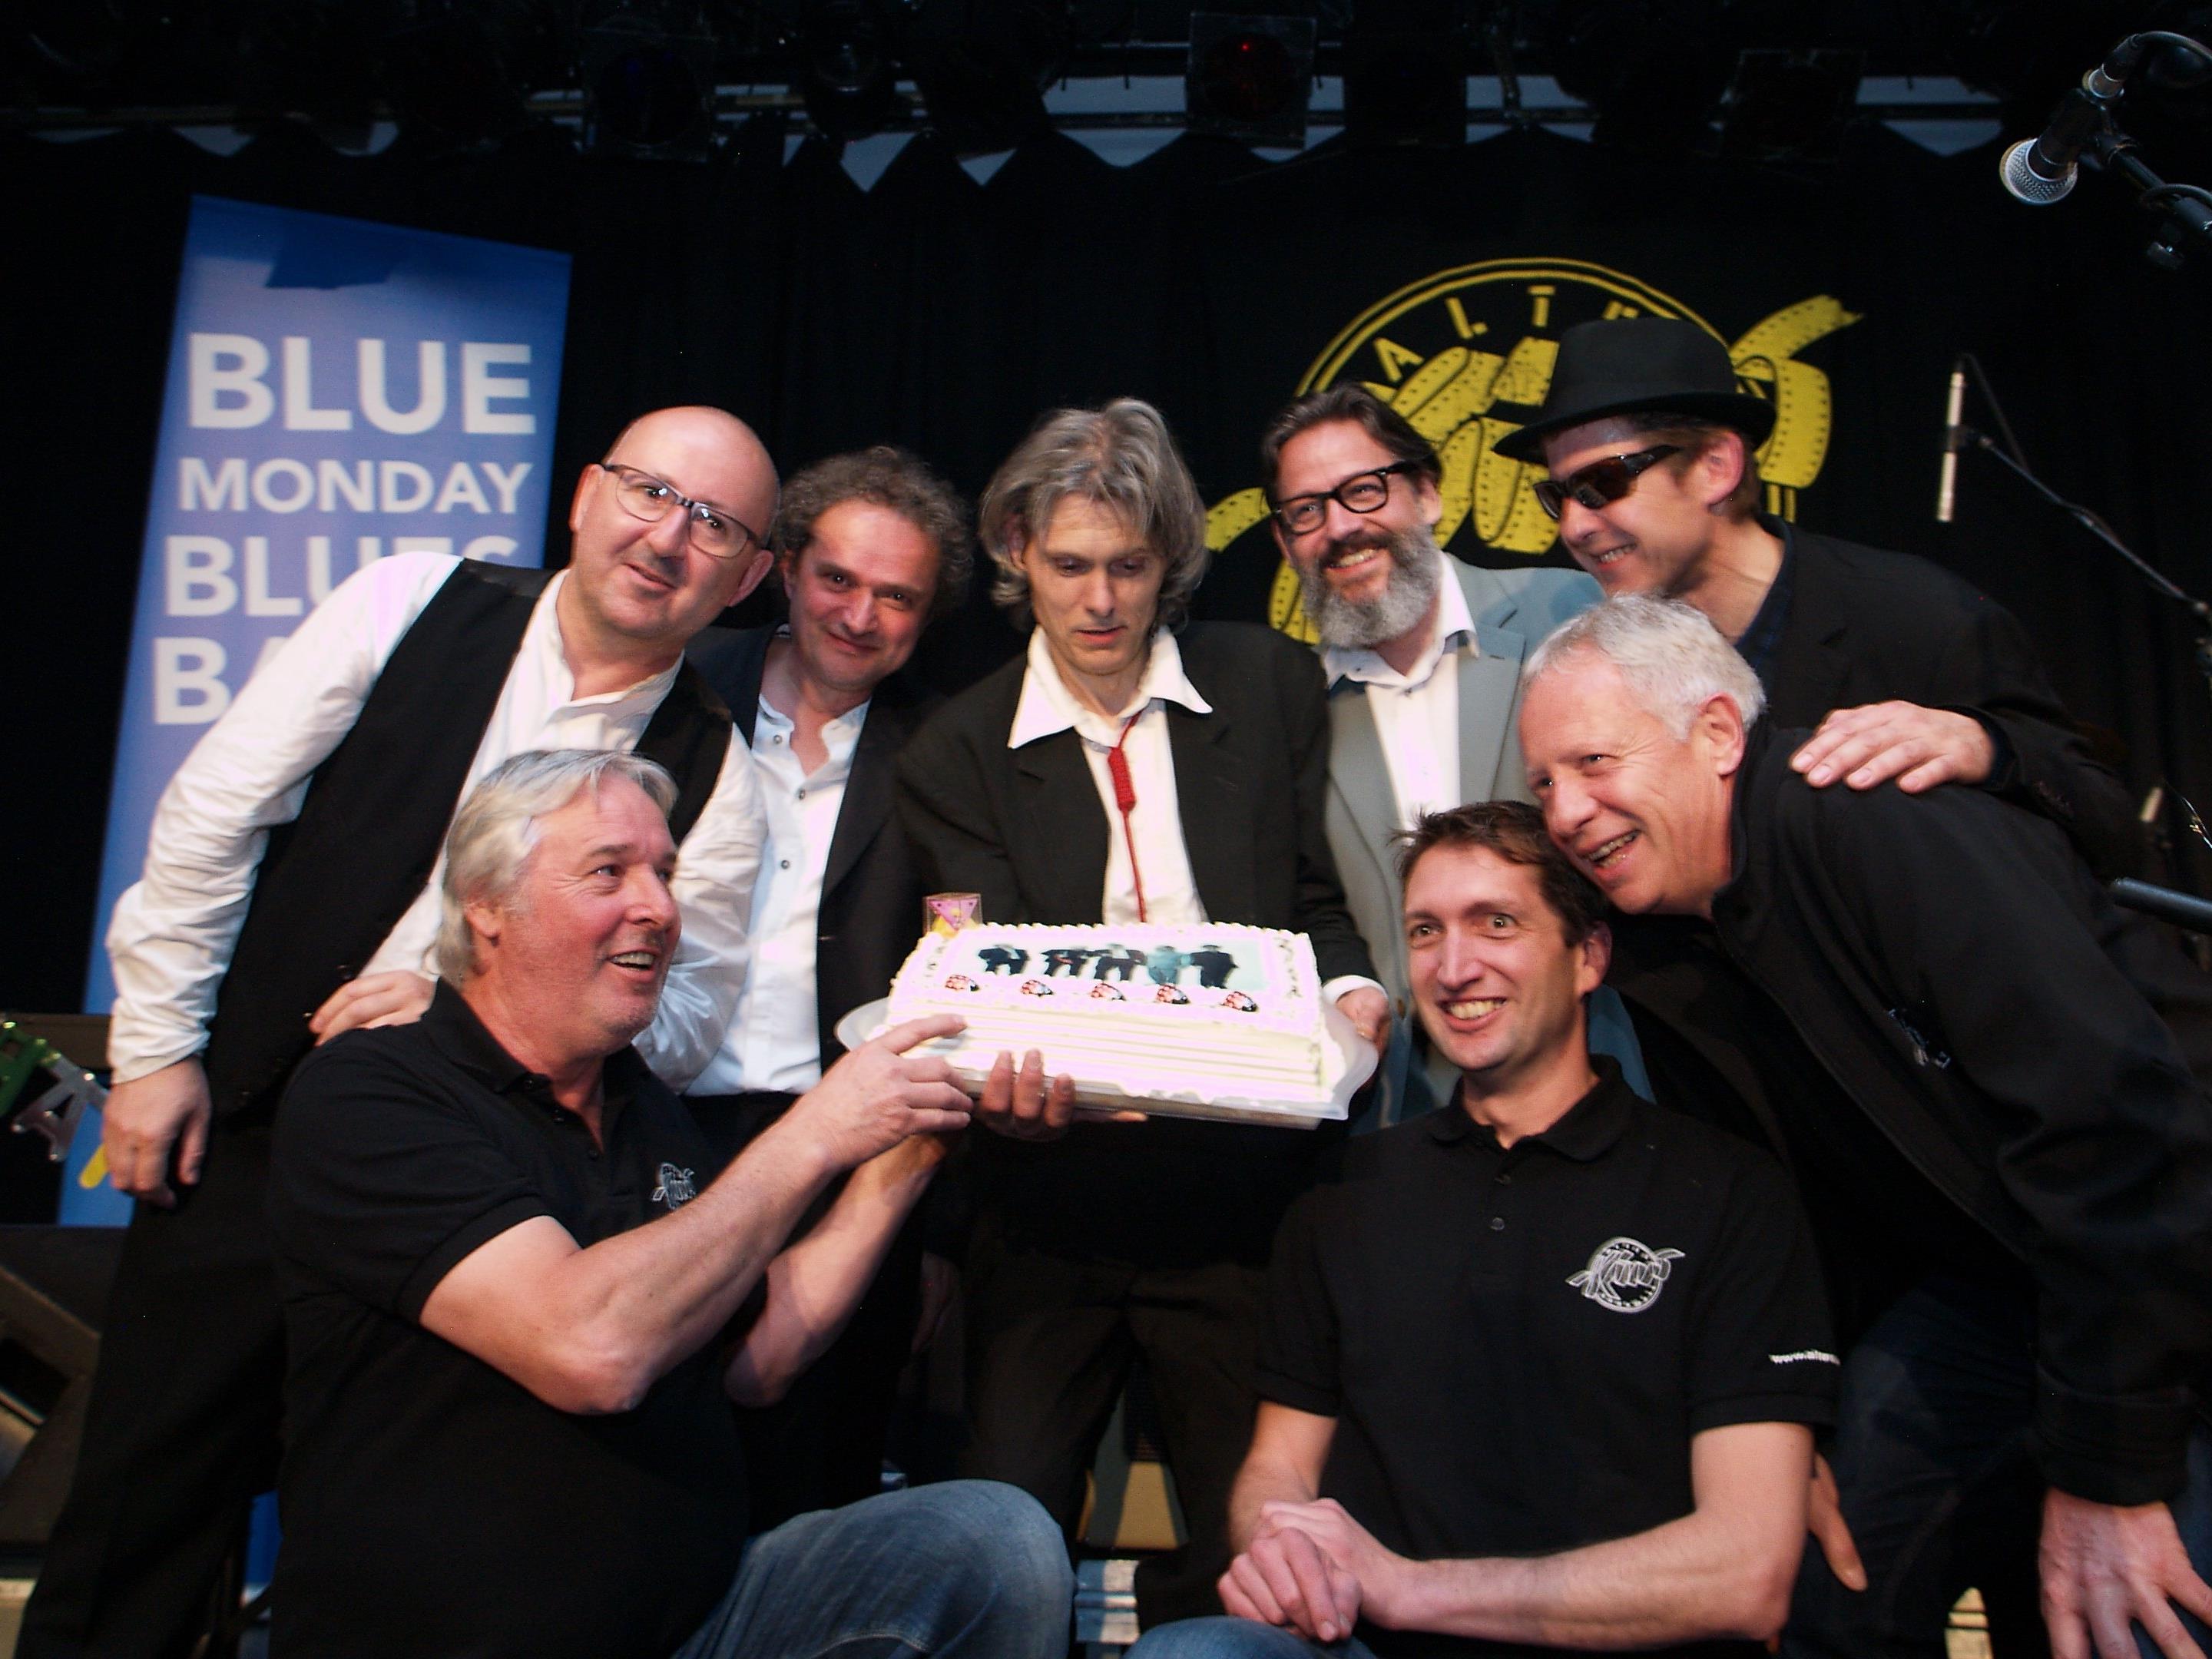 Das Team vom Alten Kino mit Armin Wille, Michael Mathis und Christian Kopf gratulierte der "Blue Monday Blues Band"